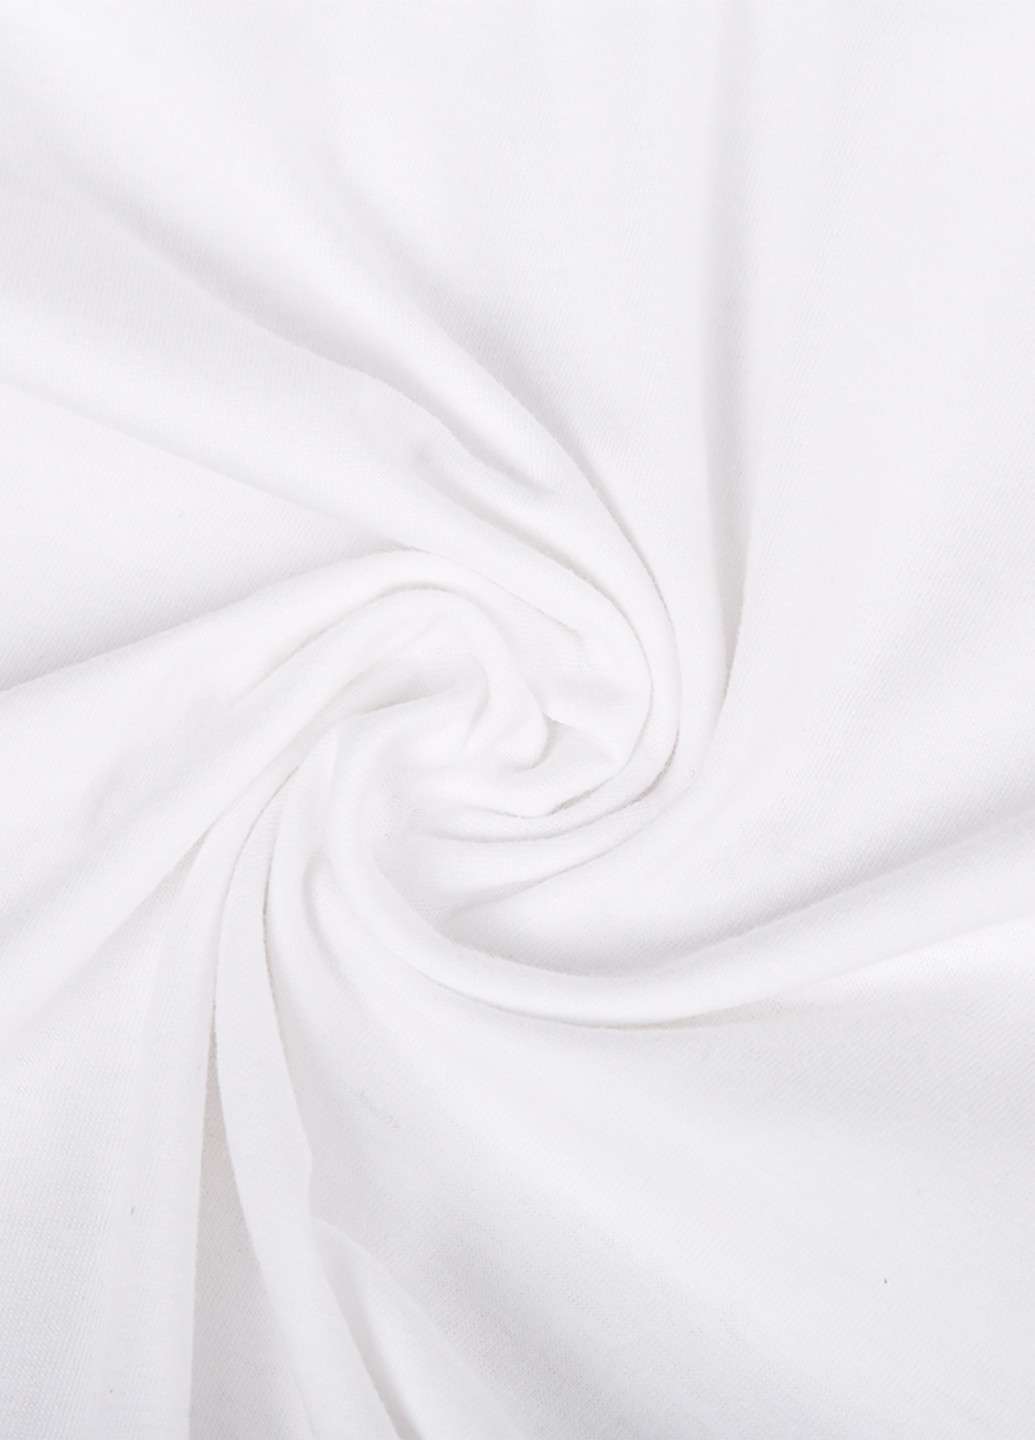 Біла демісезонна футболка дитяча робокар полі (robocar poli) (9224-1619) MobiPrint